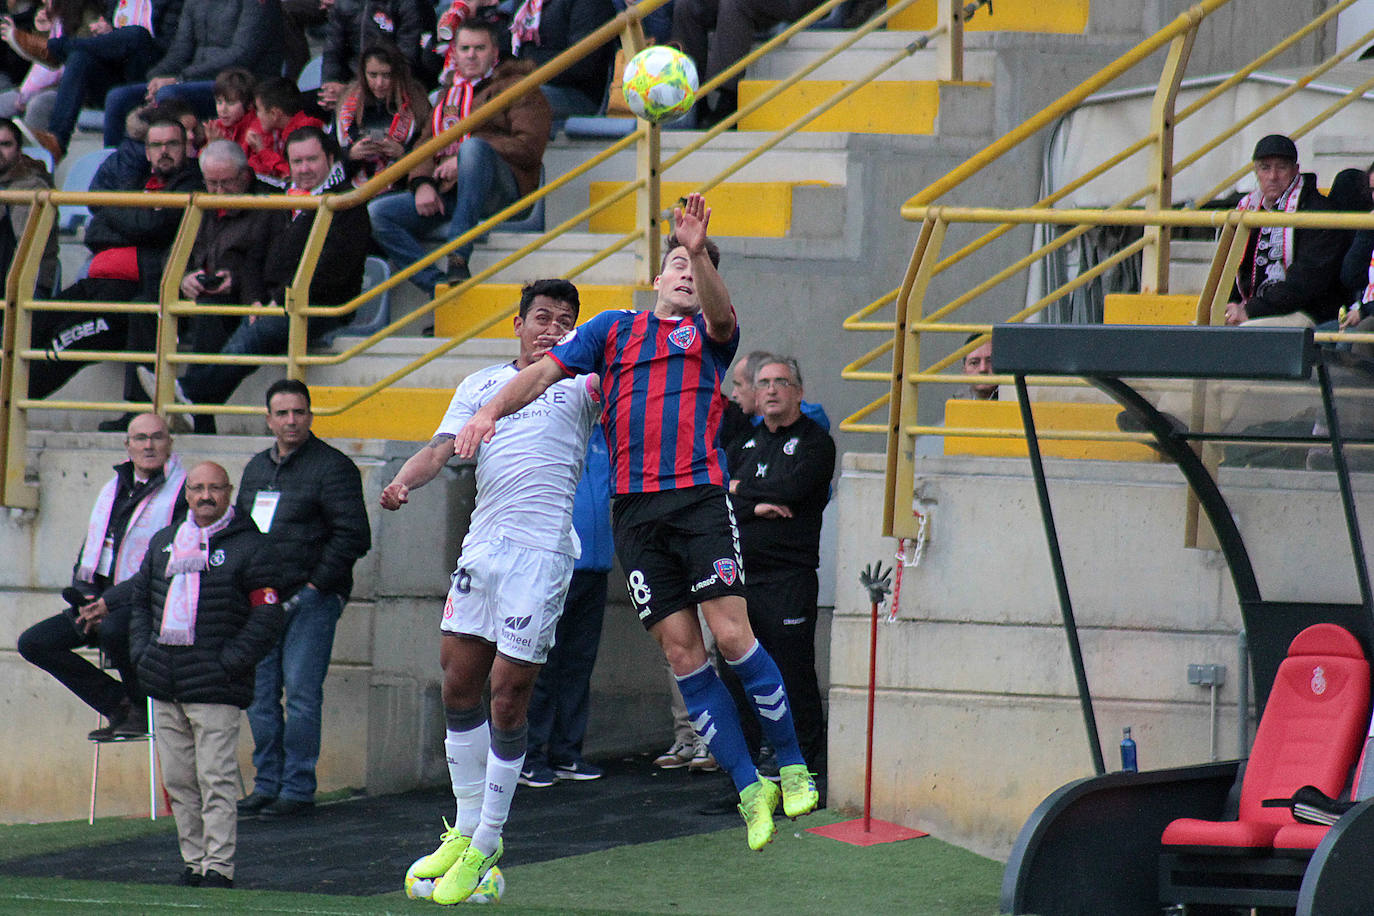 La Cultural se midió al SD Leioa en la décima jornada del campeonato nacional de liga en el grupo II de Segunda División B.